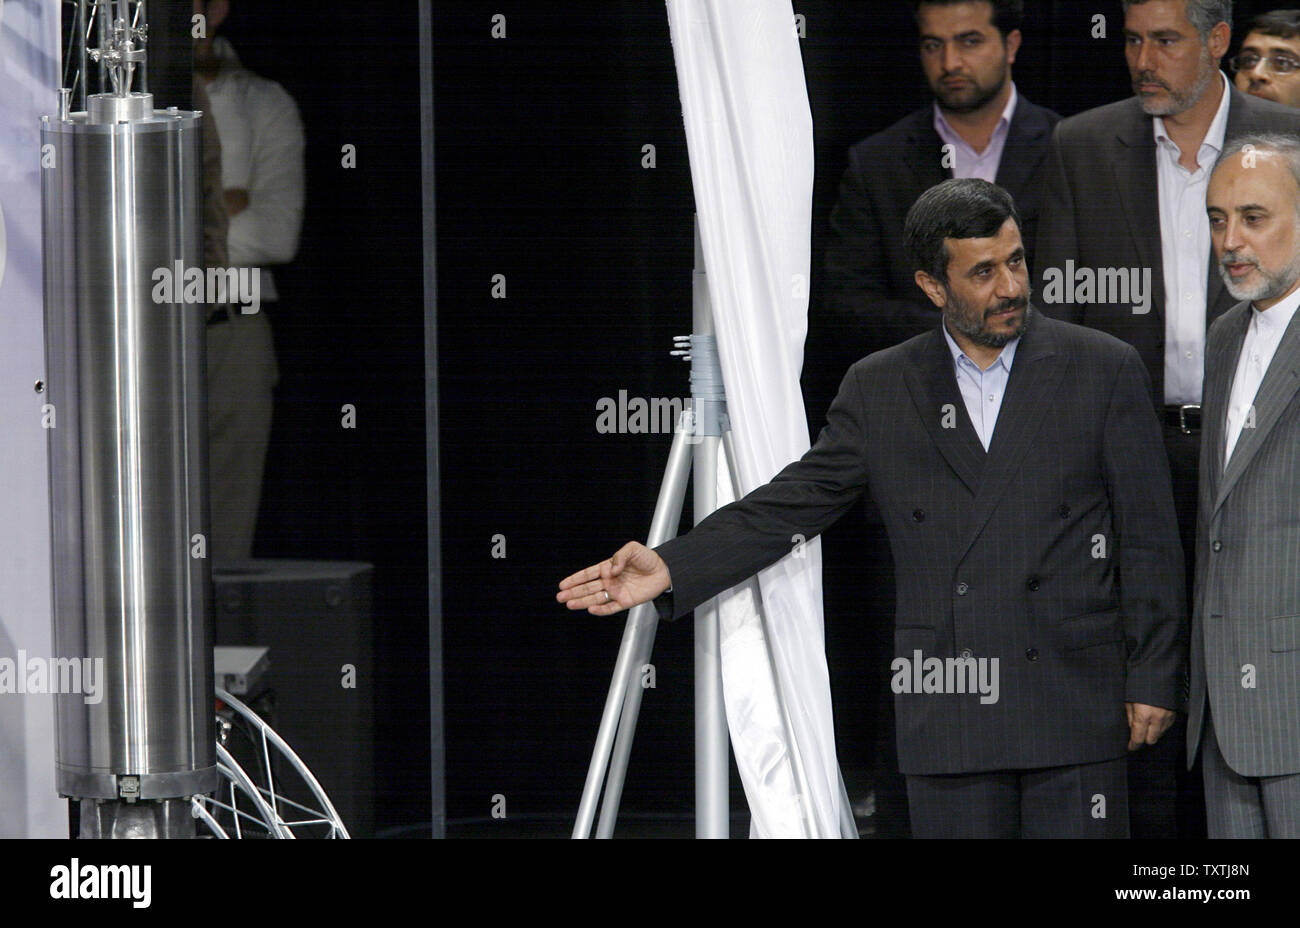 Der iranische Präsident Mahmud Ahmadinedschad (L) und der iranischen Atomenergiebehörde Kopf Ali-Akbar Salehi eine dritte Generation von im Inland gebaut Zentrifugen als Teil der Programm zur Anreicherung von Uran des Landes vorstellen und Markierung der 4. Nationalen Jahrestag der Kerntechnik in Teheran, Iran, dem 9. April 2010. UPI/Maryam Rahmanian. Stockfoto